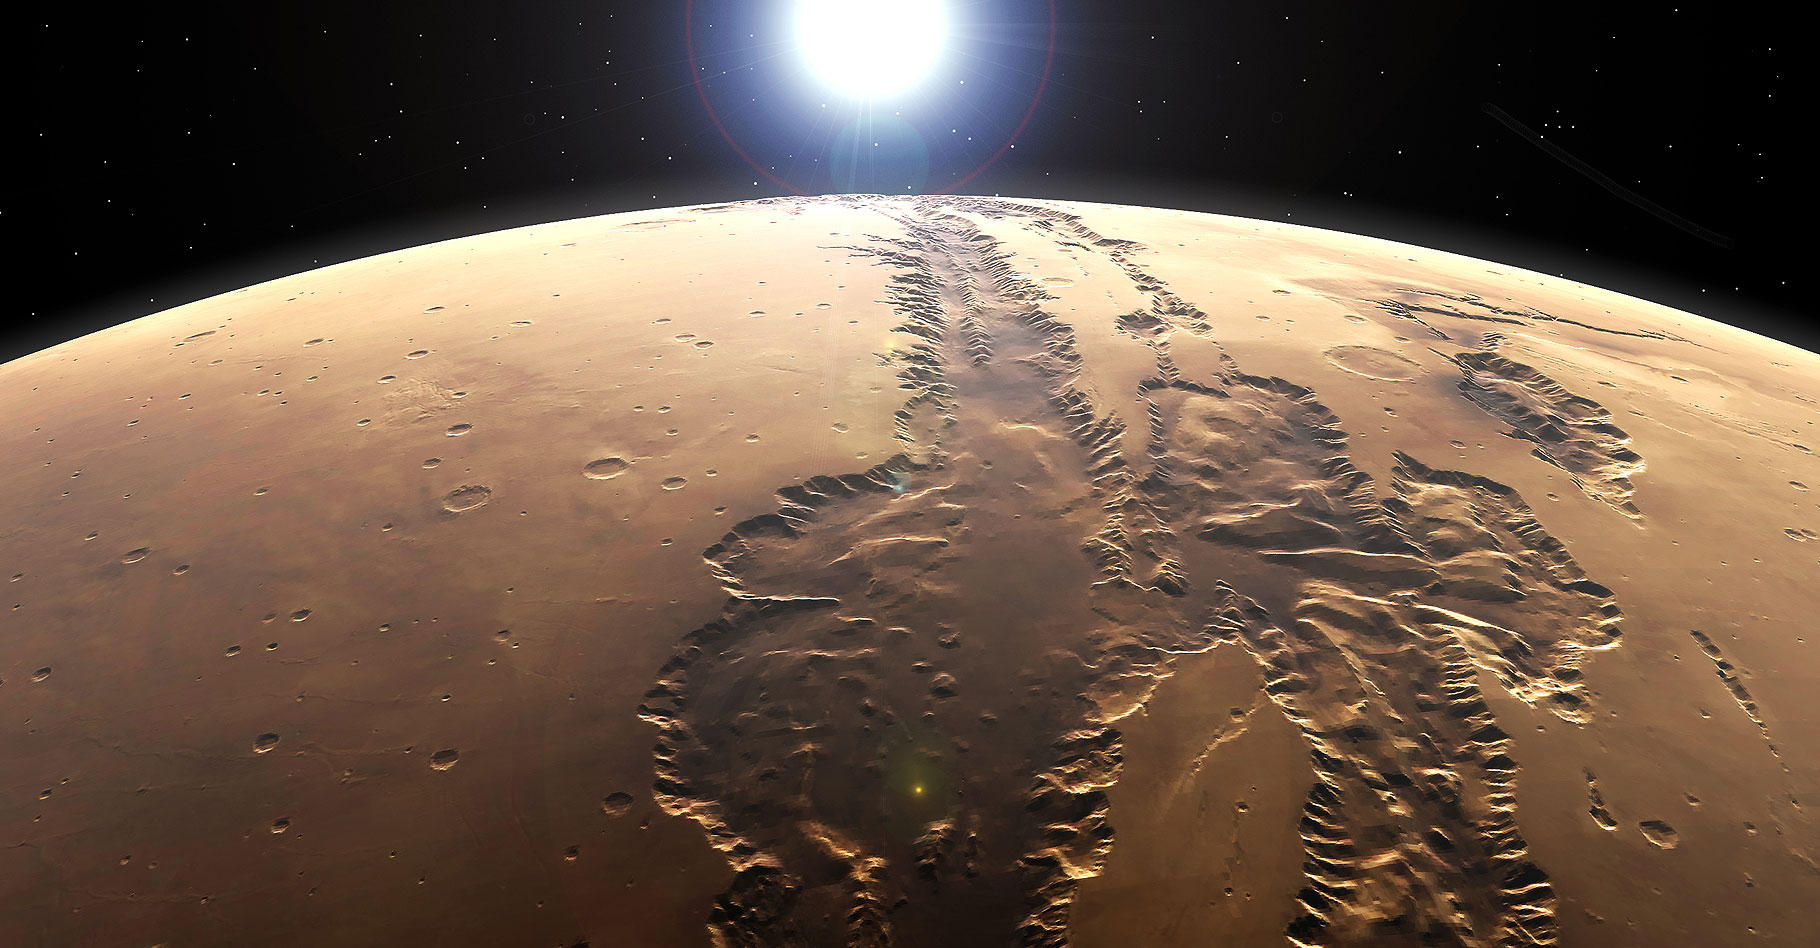 Valles Marineris.&nbsp;© Kevin Gill 6&nbsp;CC BY-SA 2.0